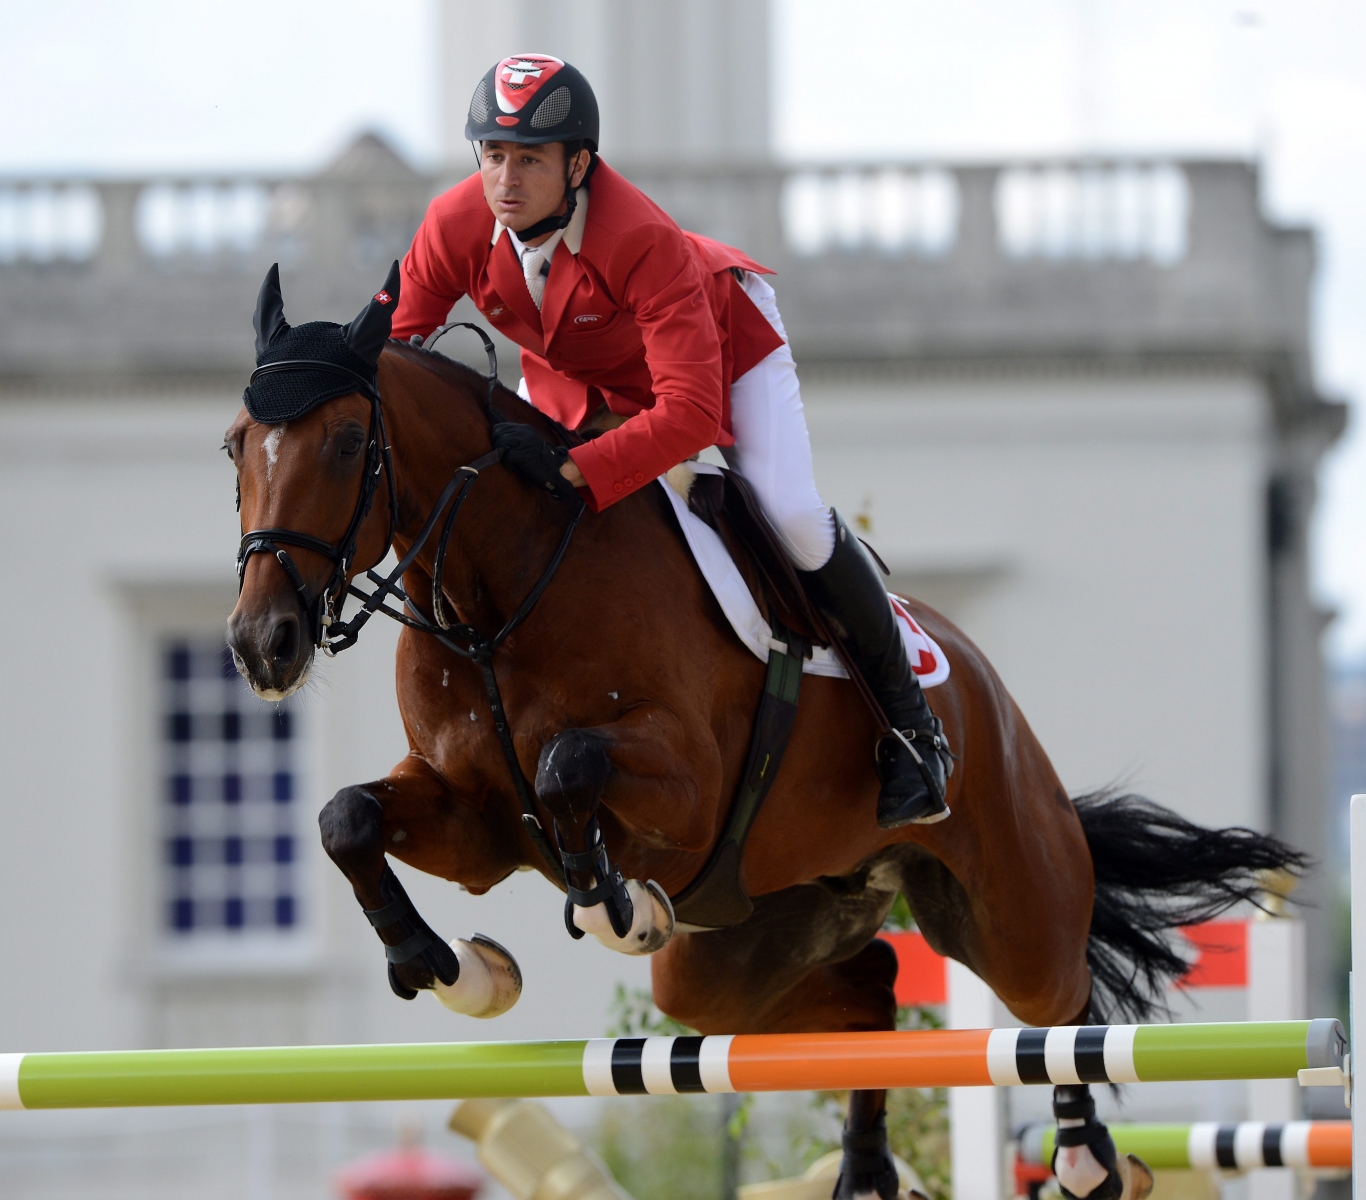 Steve Guerdat et son cheval Nino des Buissonnets conservent leurs chances de victoire finale à Stockholm.